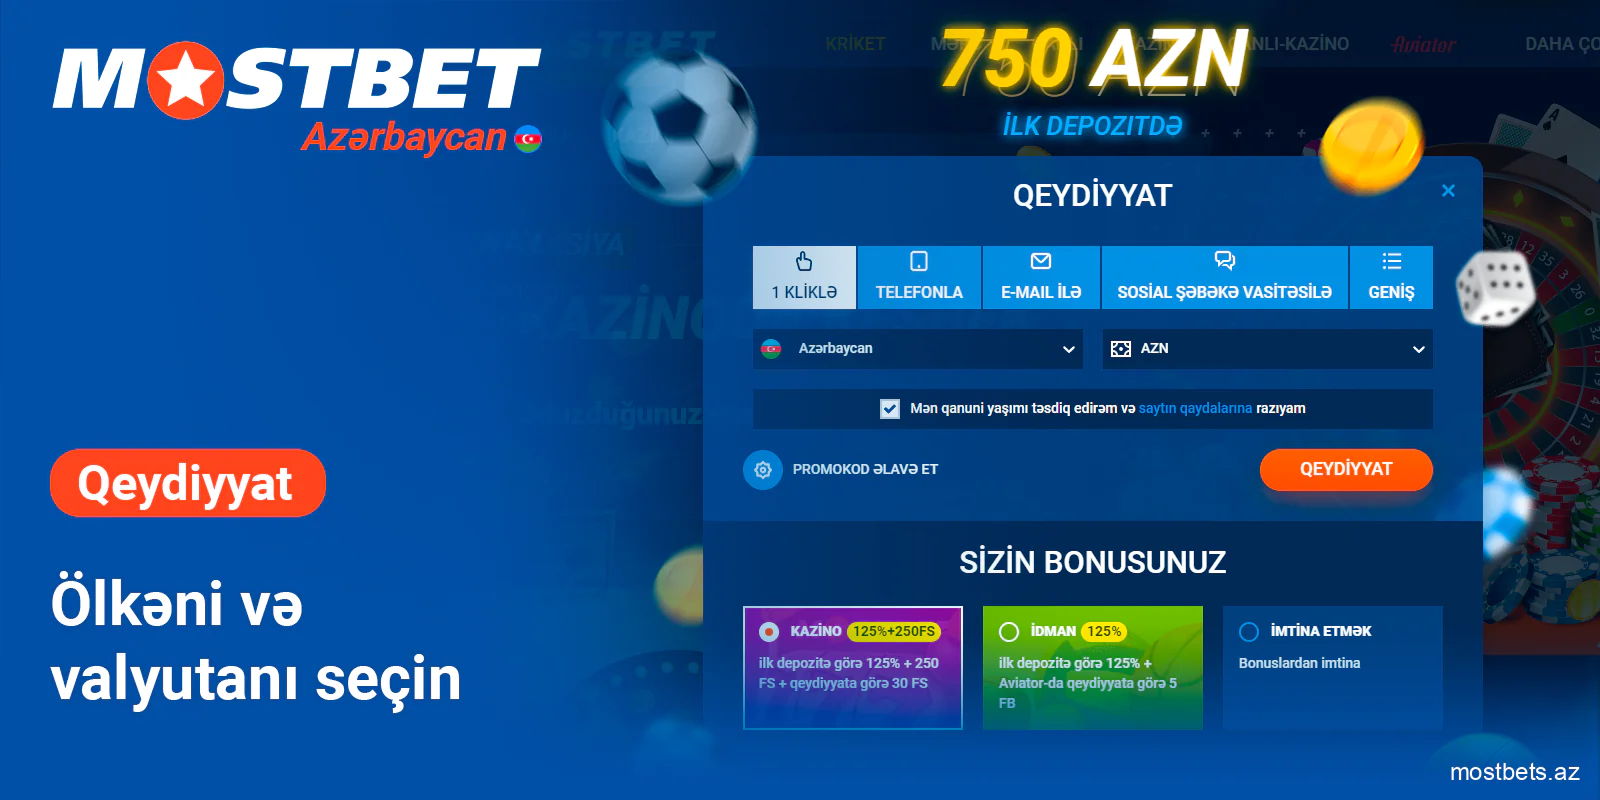 Azərbaycan və AZN - Mostbet seçin